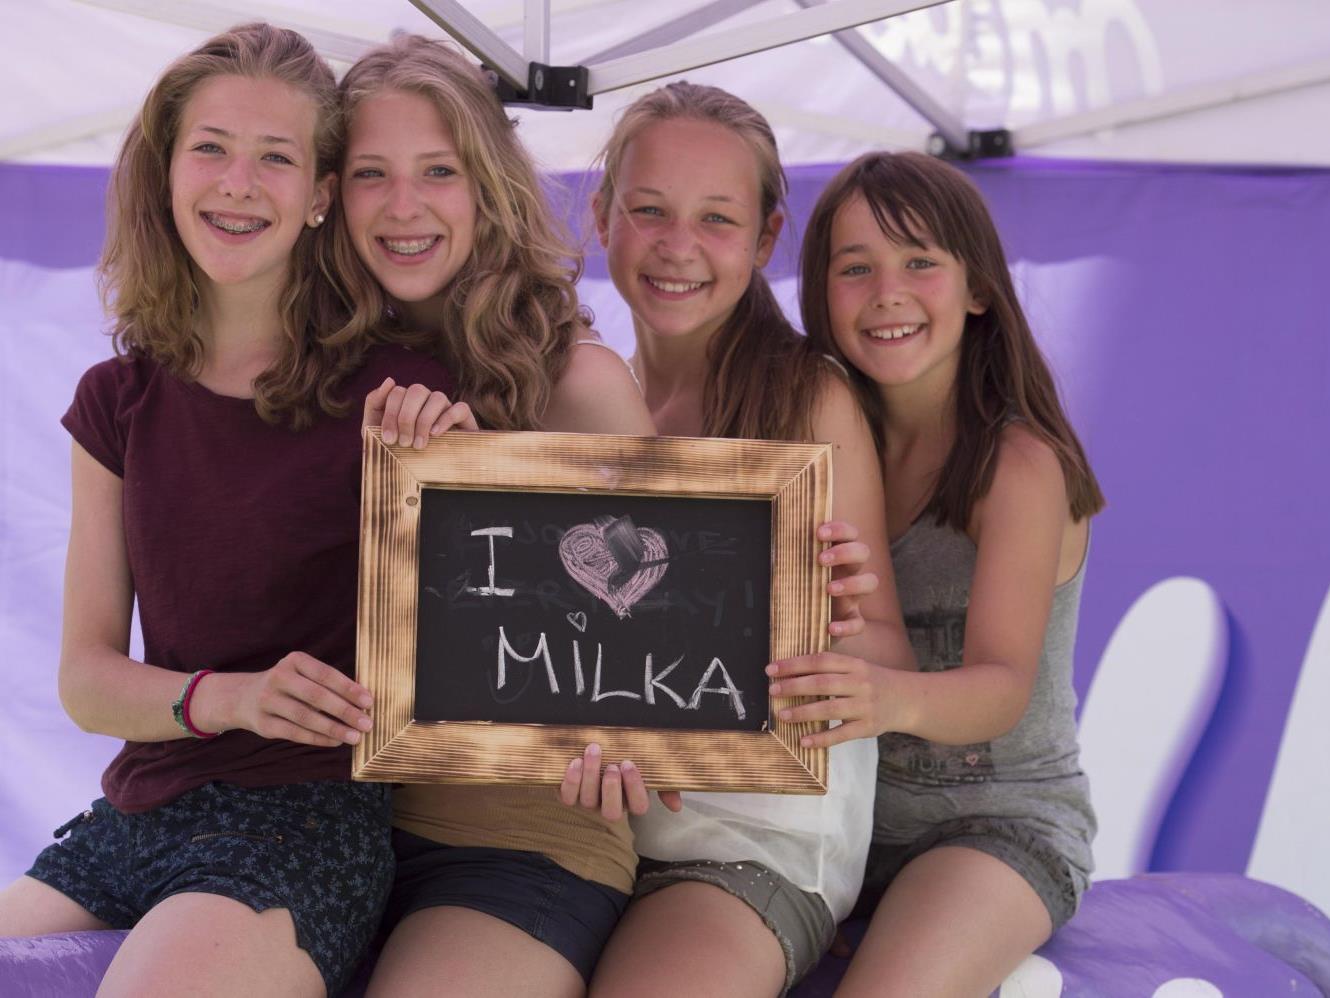 Das 31. Milka Schokofest mit vielen Programm-Highlights am 5. Juli 2014 in Bludenz.